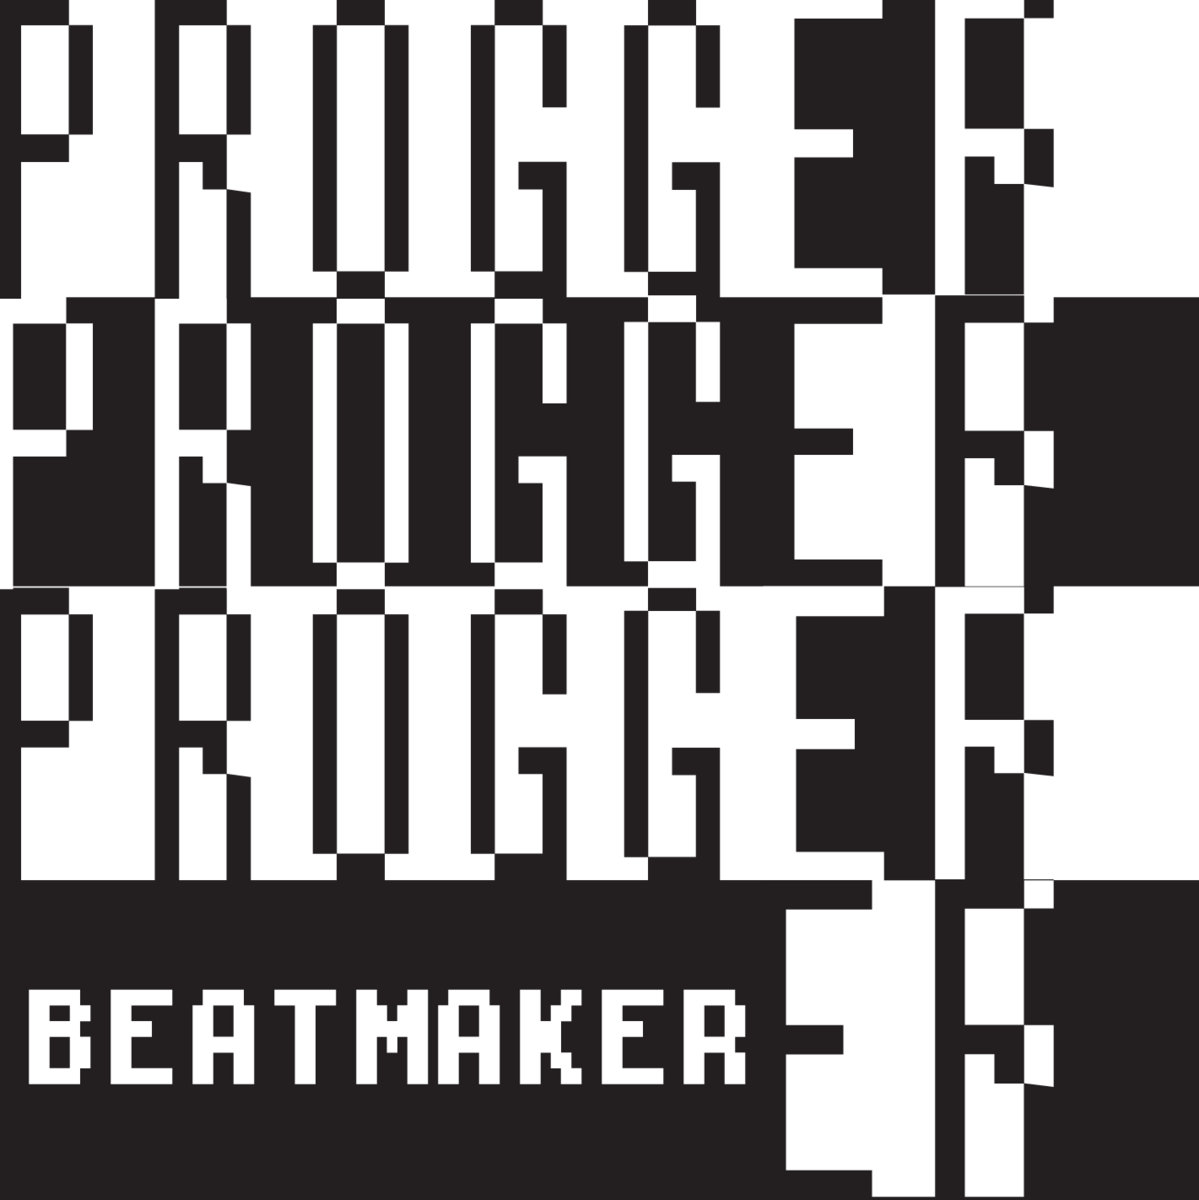 beatmaker mp3